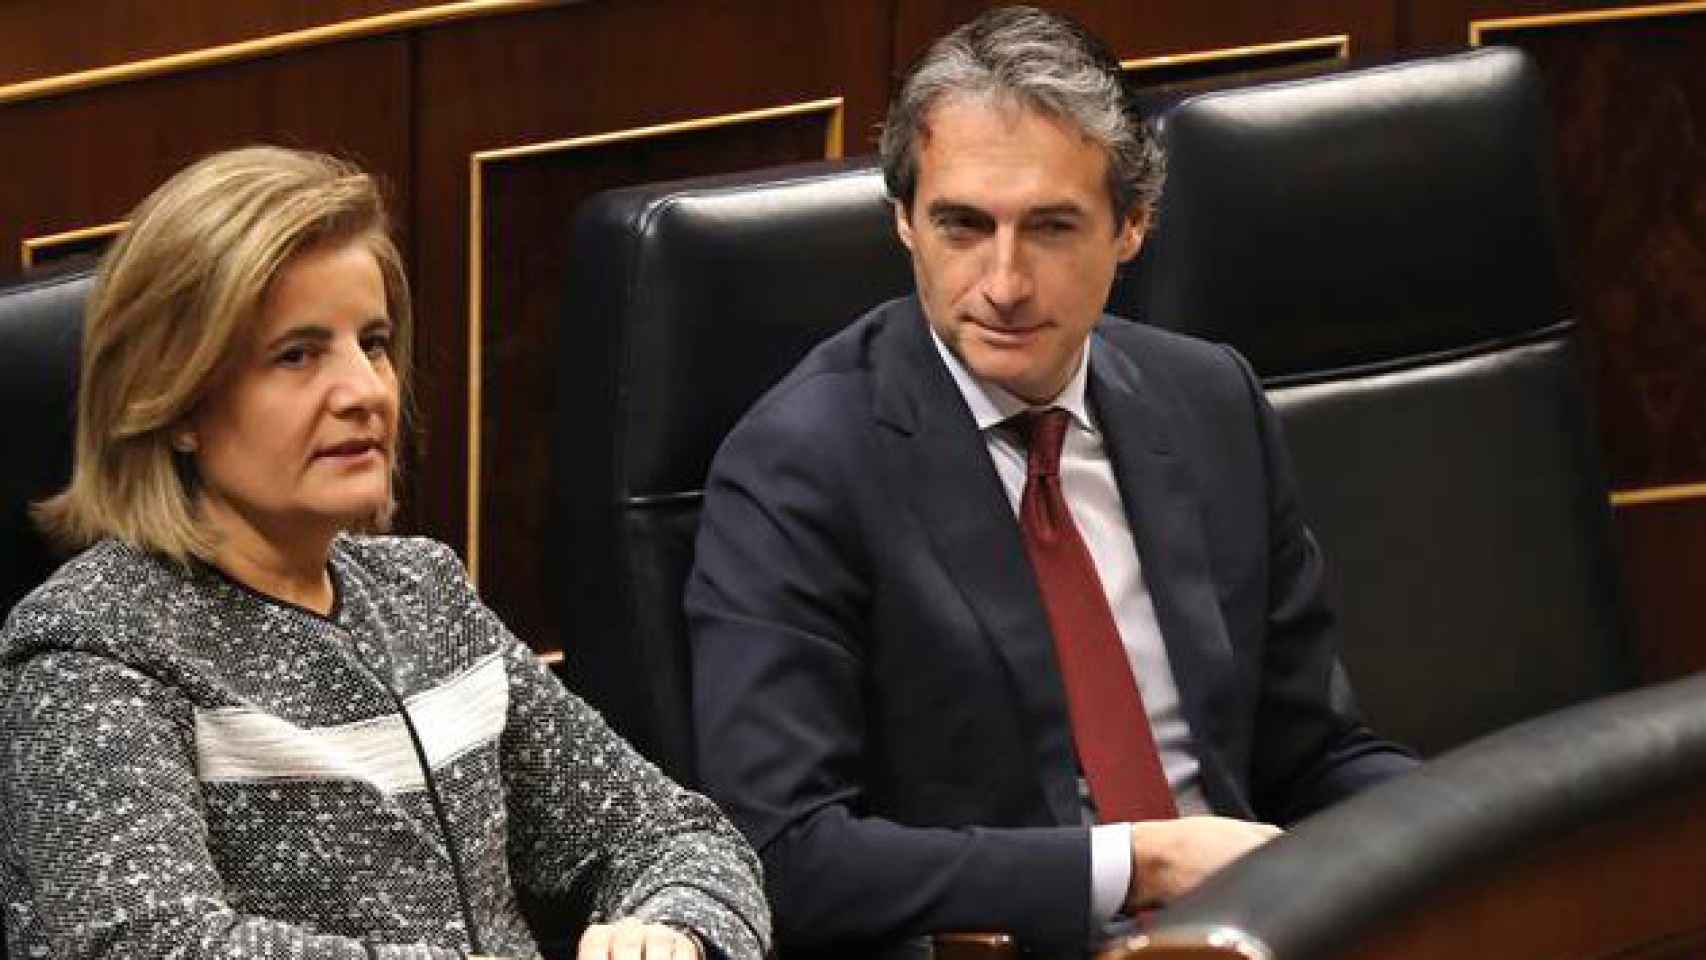 El ministro de Fomento, Íñigo de la Serna, d., y la ministra de Empleo, Fátima Bañez,iz., en el pleno del Congreso de los Diputados / CG